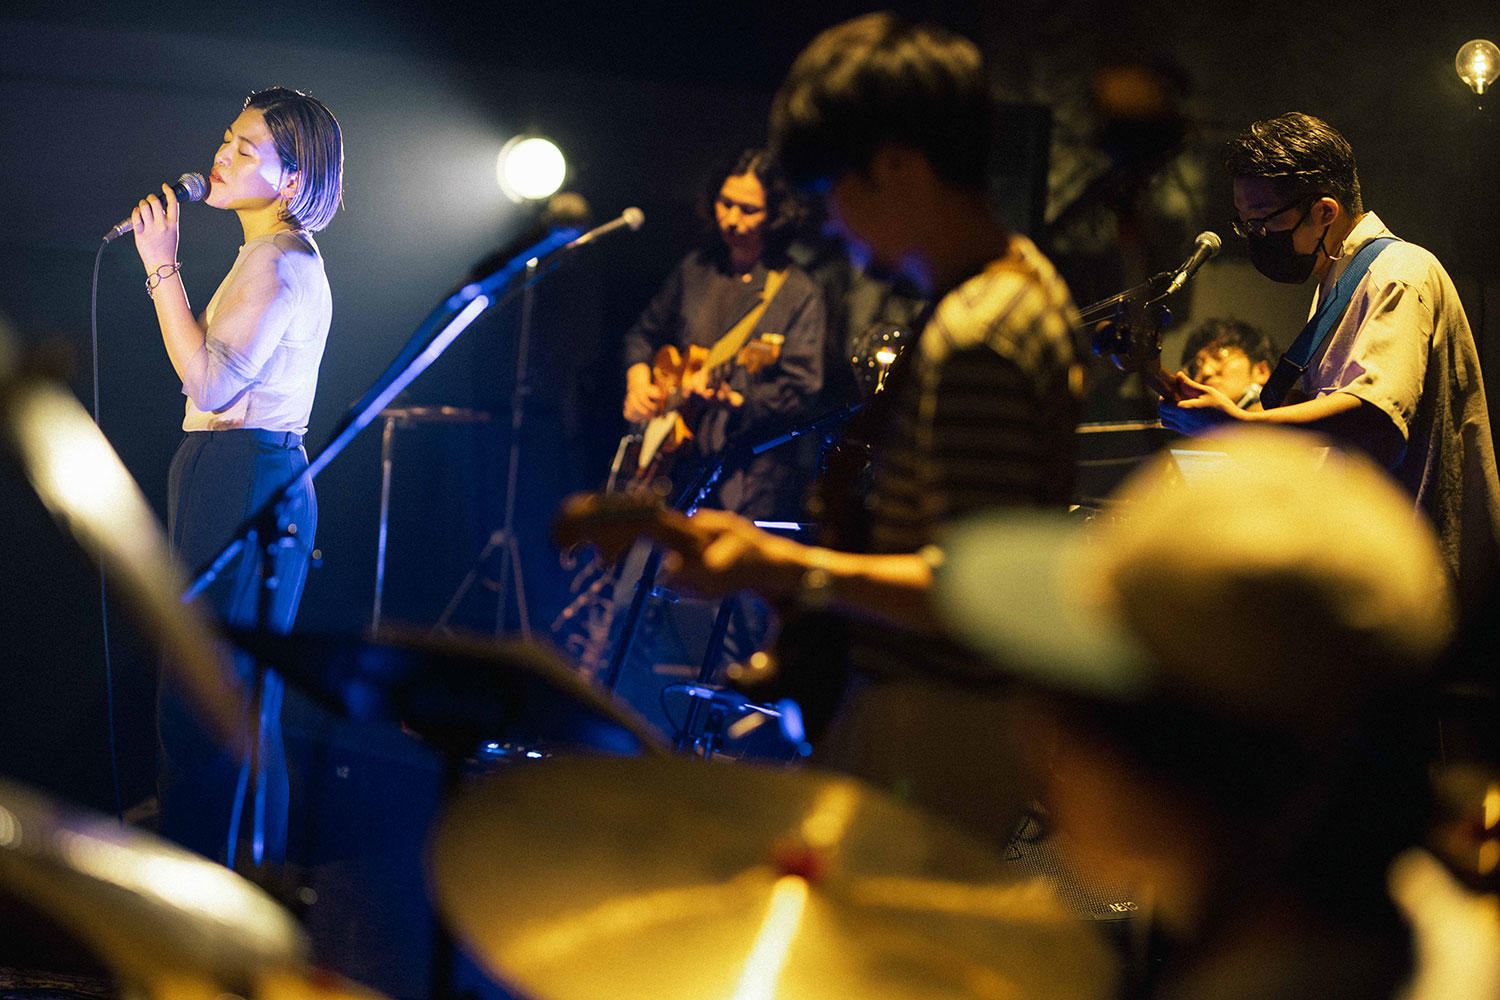 優河、魔法バンドと「言葉のない夜に」の世界を再構築した東京キネマ倶楽部公演